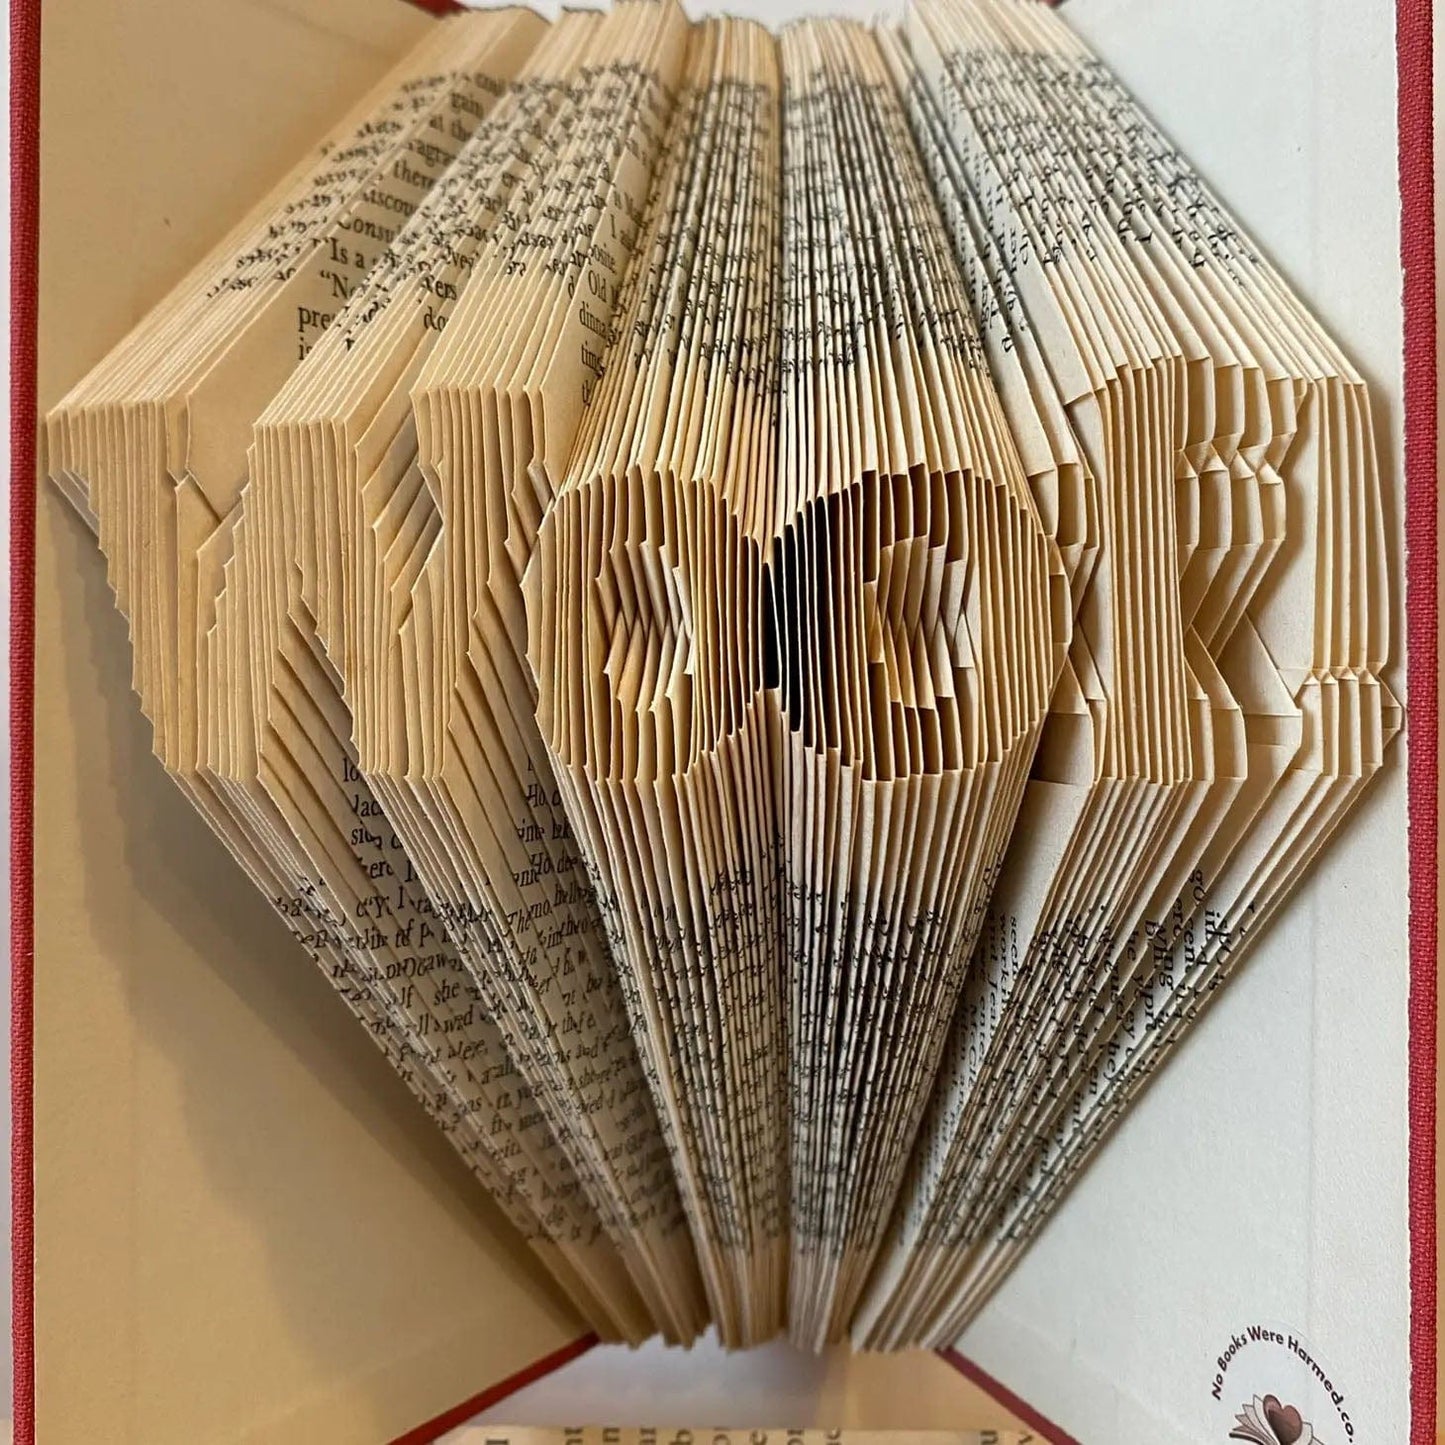 Folded Book Art - Woof!